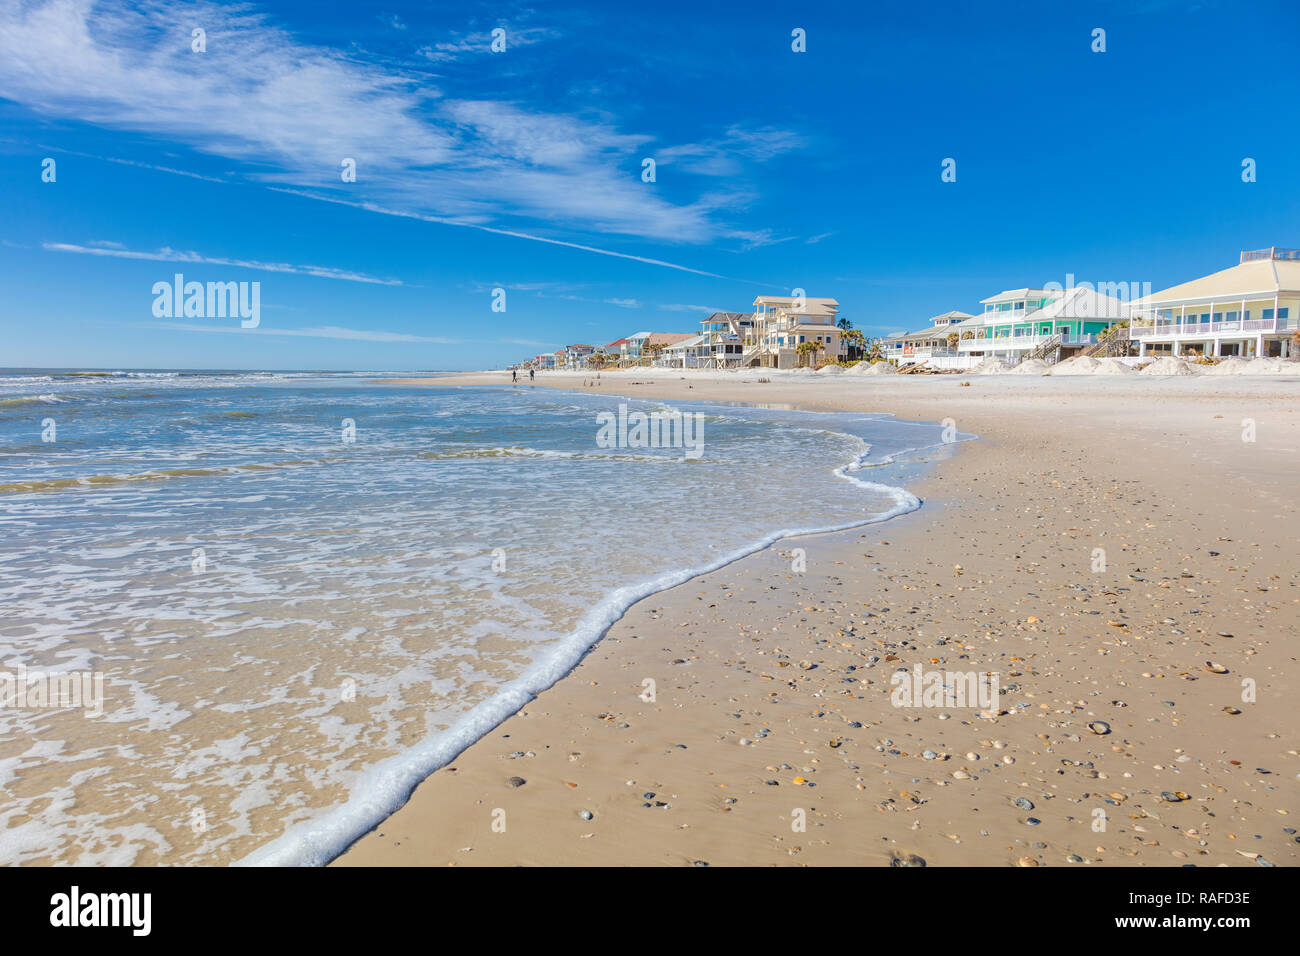 Häuser am Golf von Mexiko Strand auf St. George Island im pfannenstiel oder vergessene Küste von Florida in den Vereinigten Staaten Stockfoto